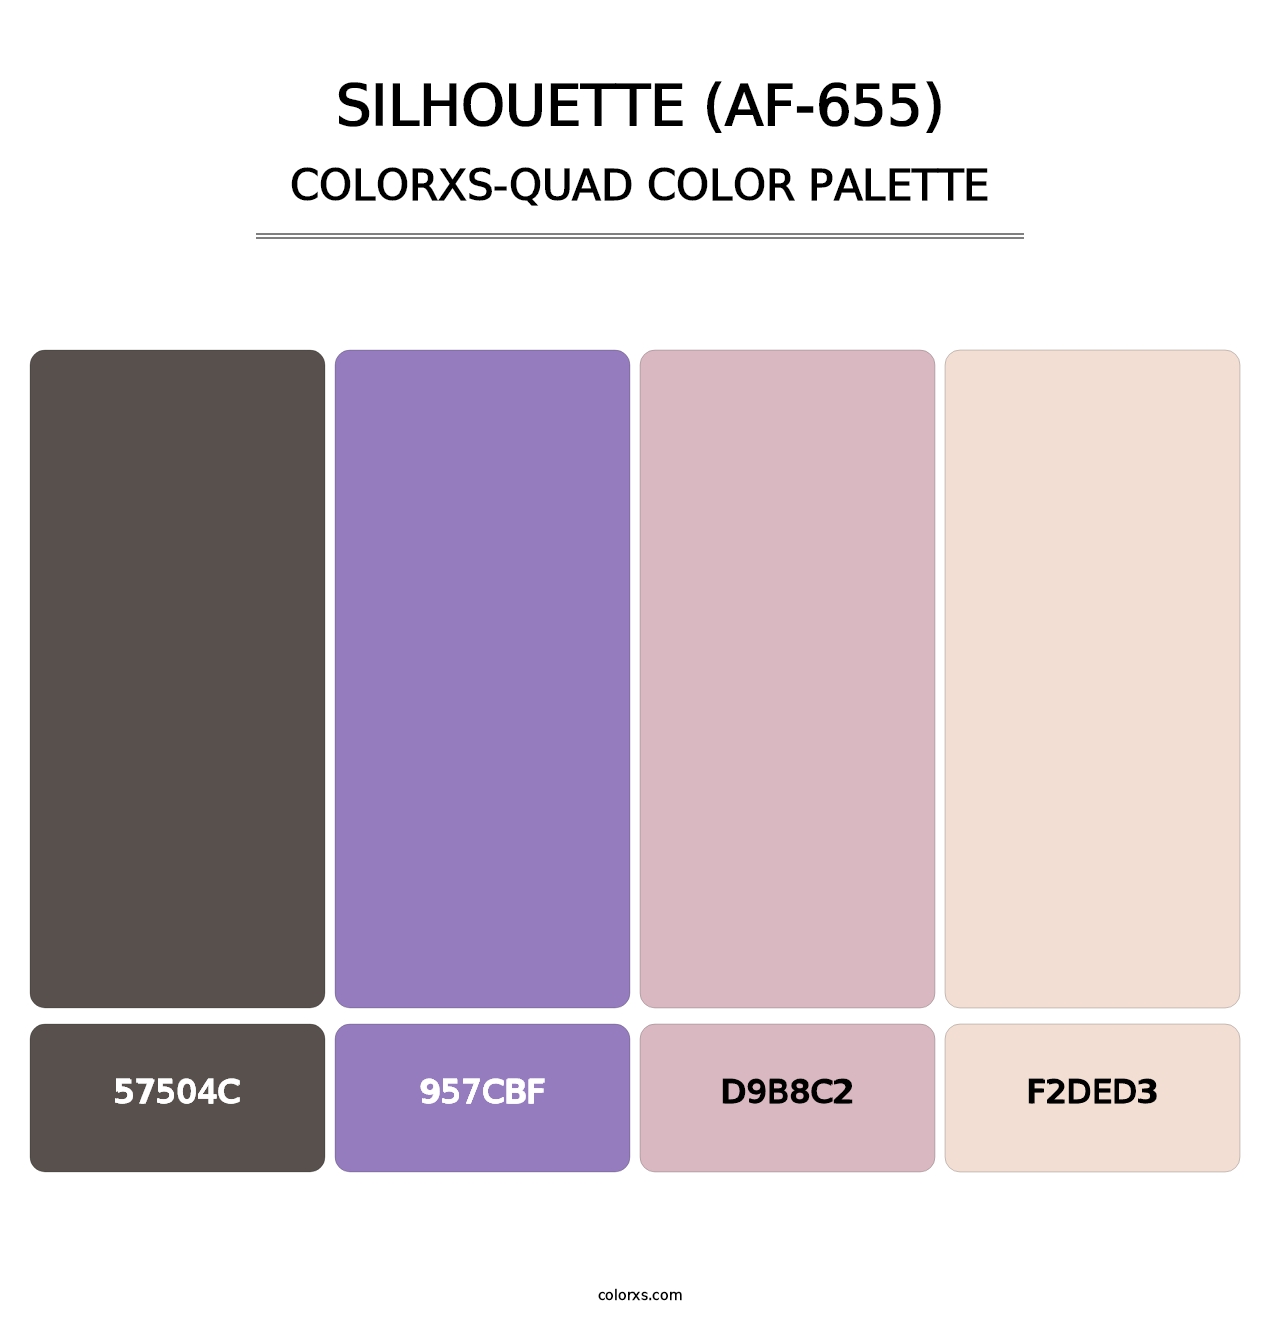 Silhouette (AF-655) - Colorxs Quad Palette